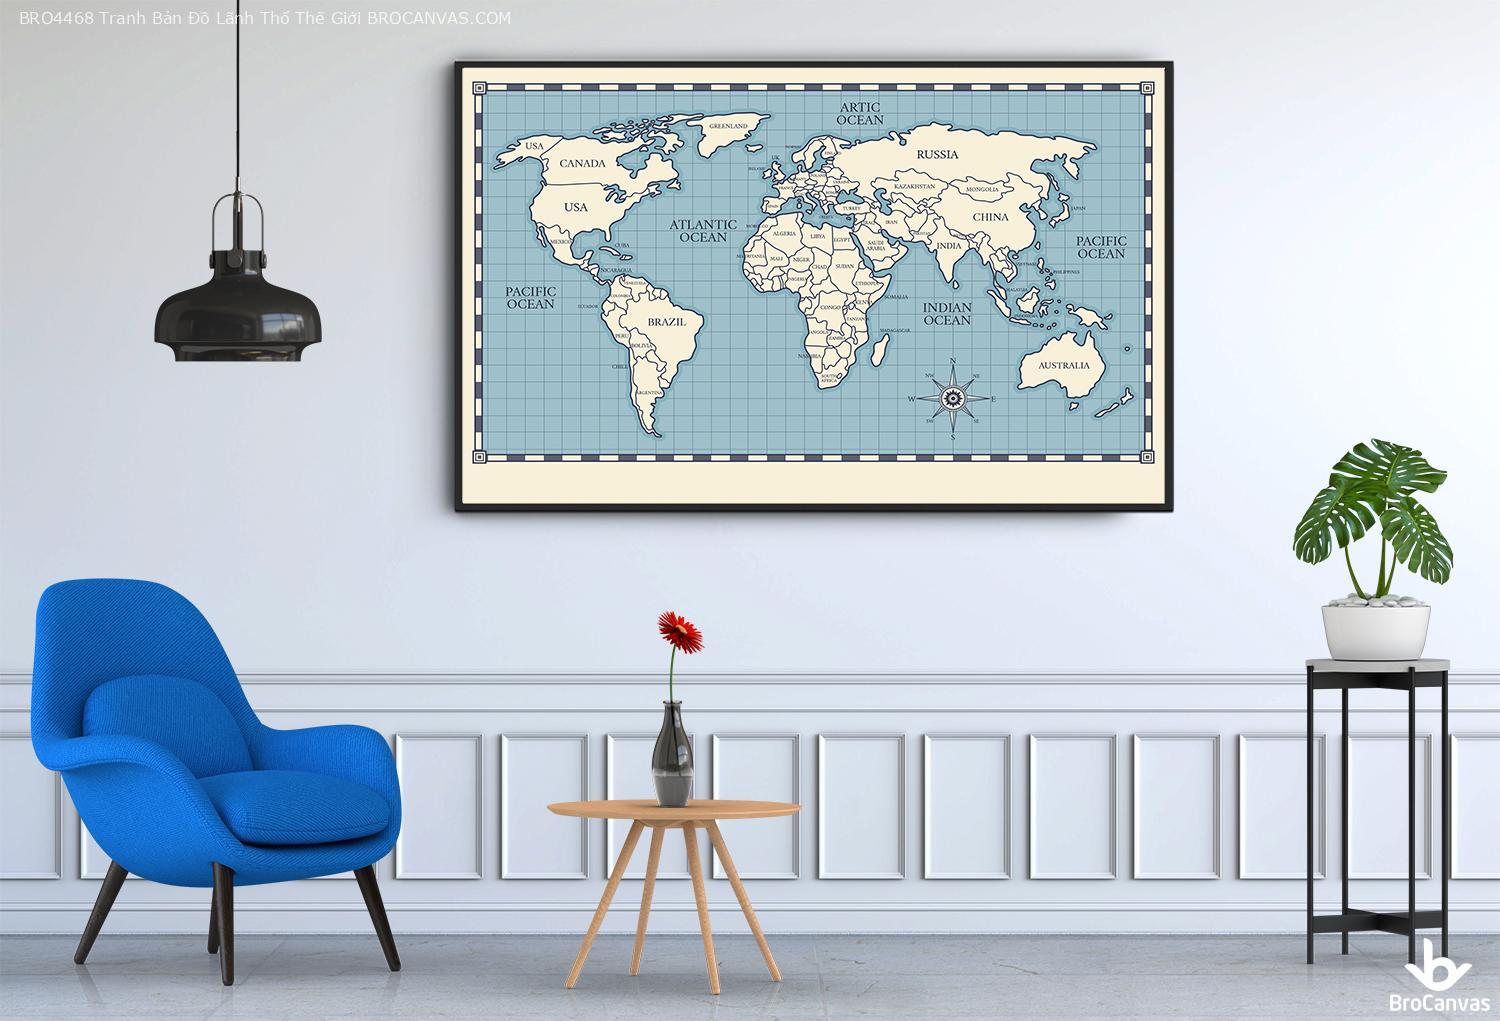 Bro4468 tranh bản đồ lãnh thổ thế giới